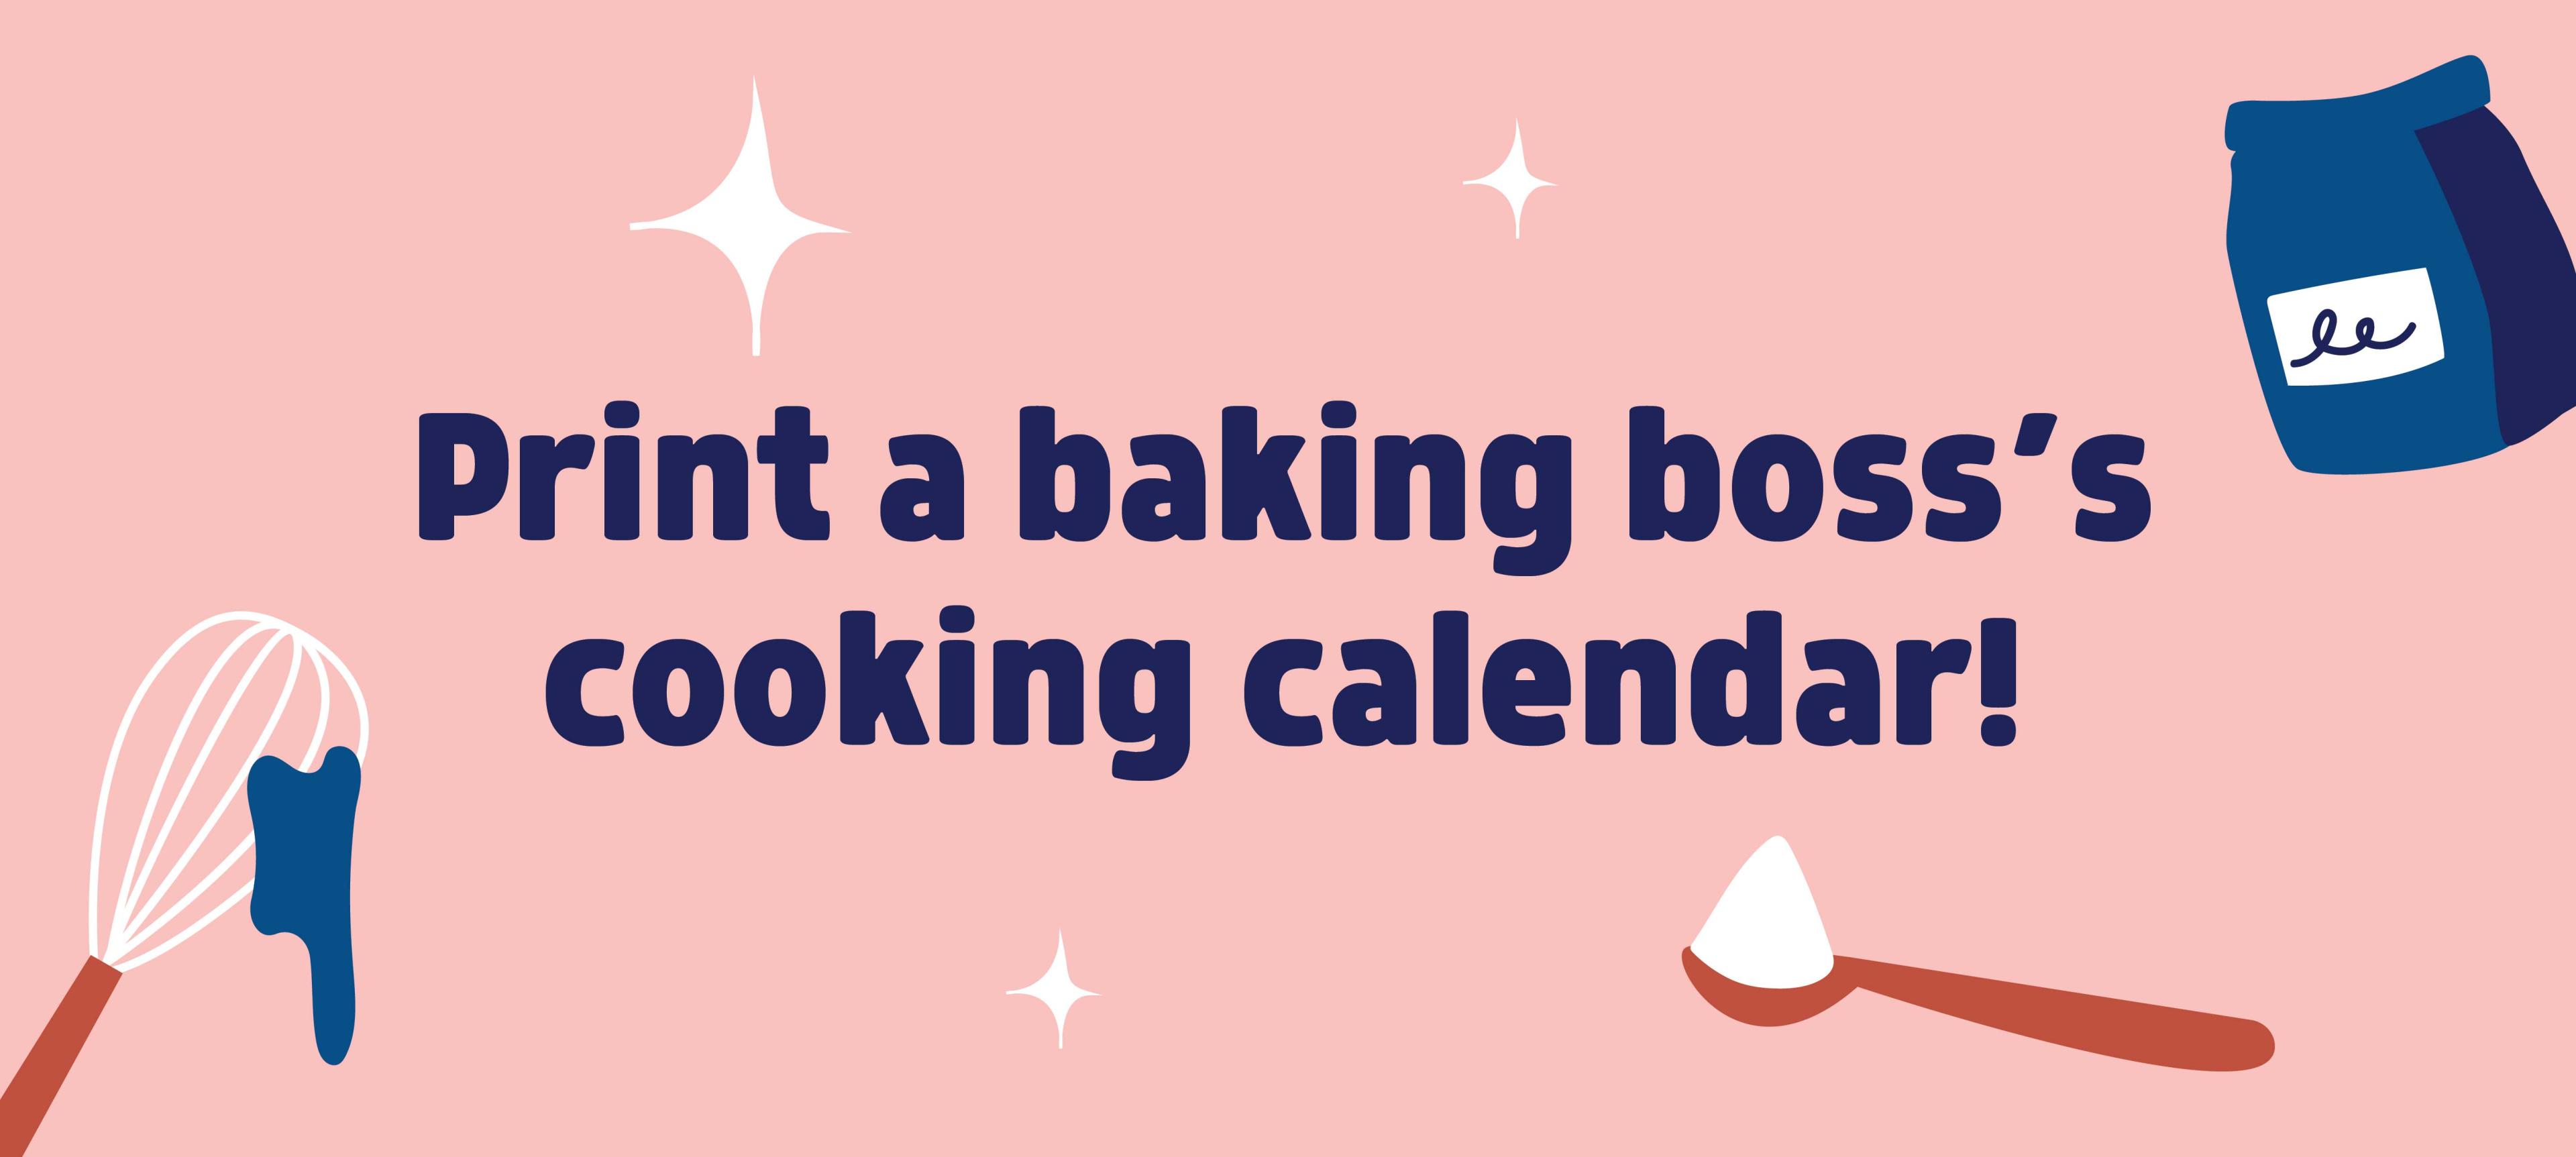 Baking Boss - Cooking Calendar!